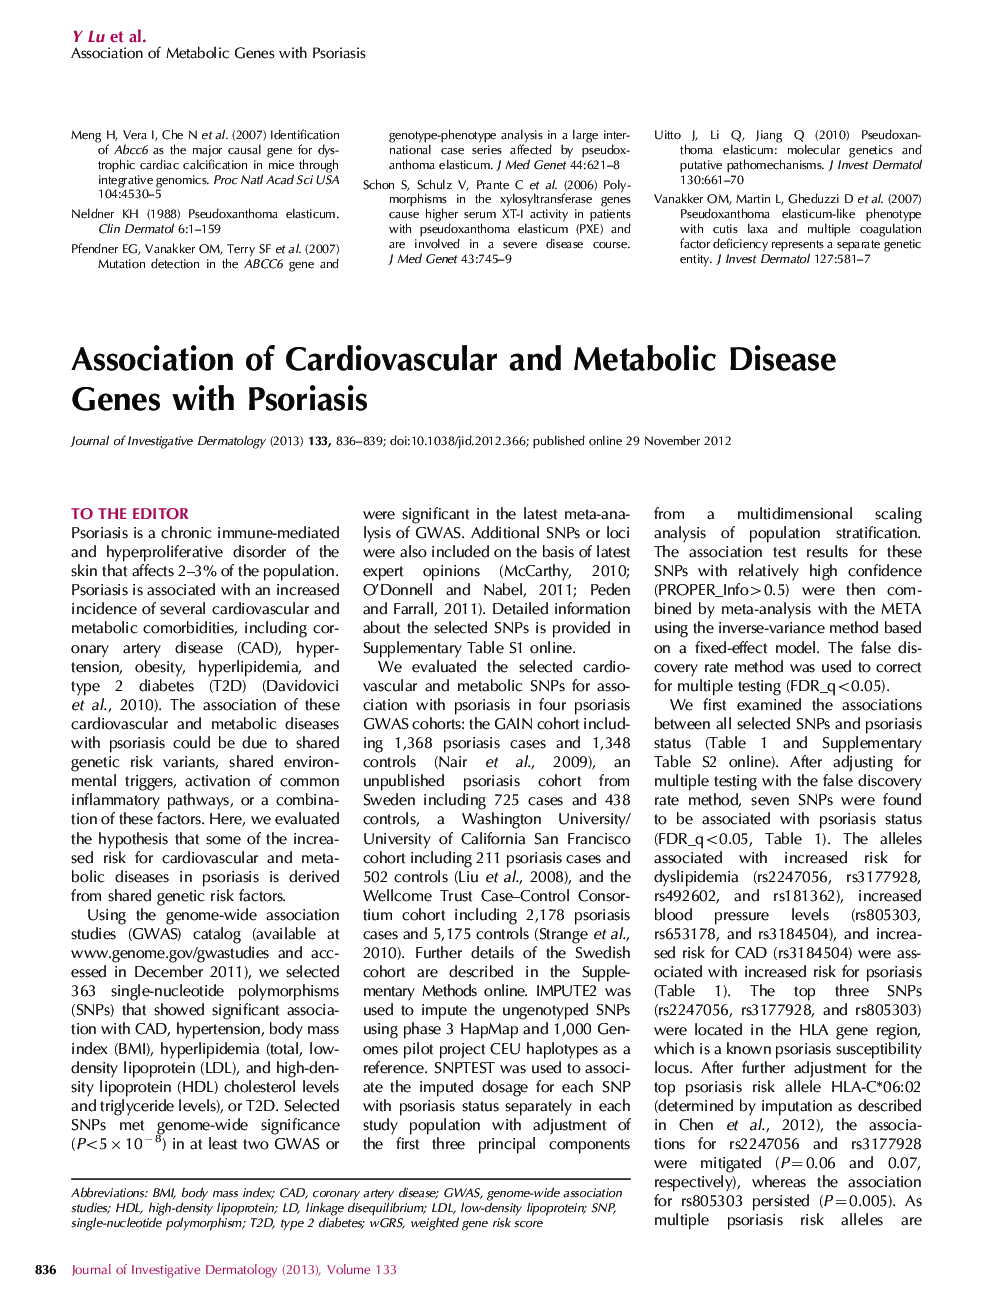 انجمن ژنهای بیماری قلبی عروقی و متابولیک با پسوریازیس 